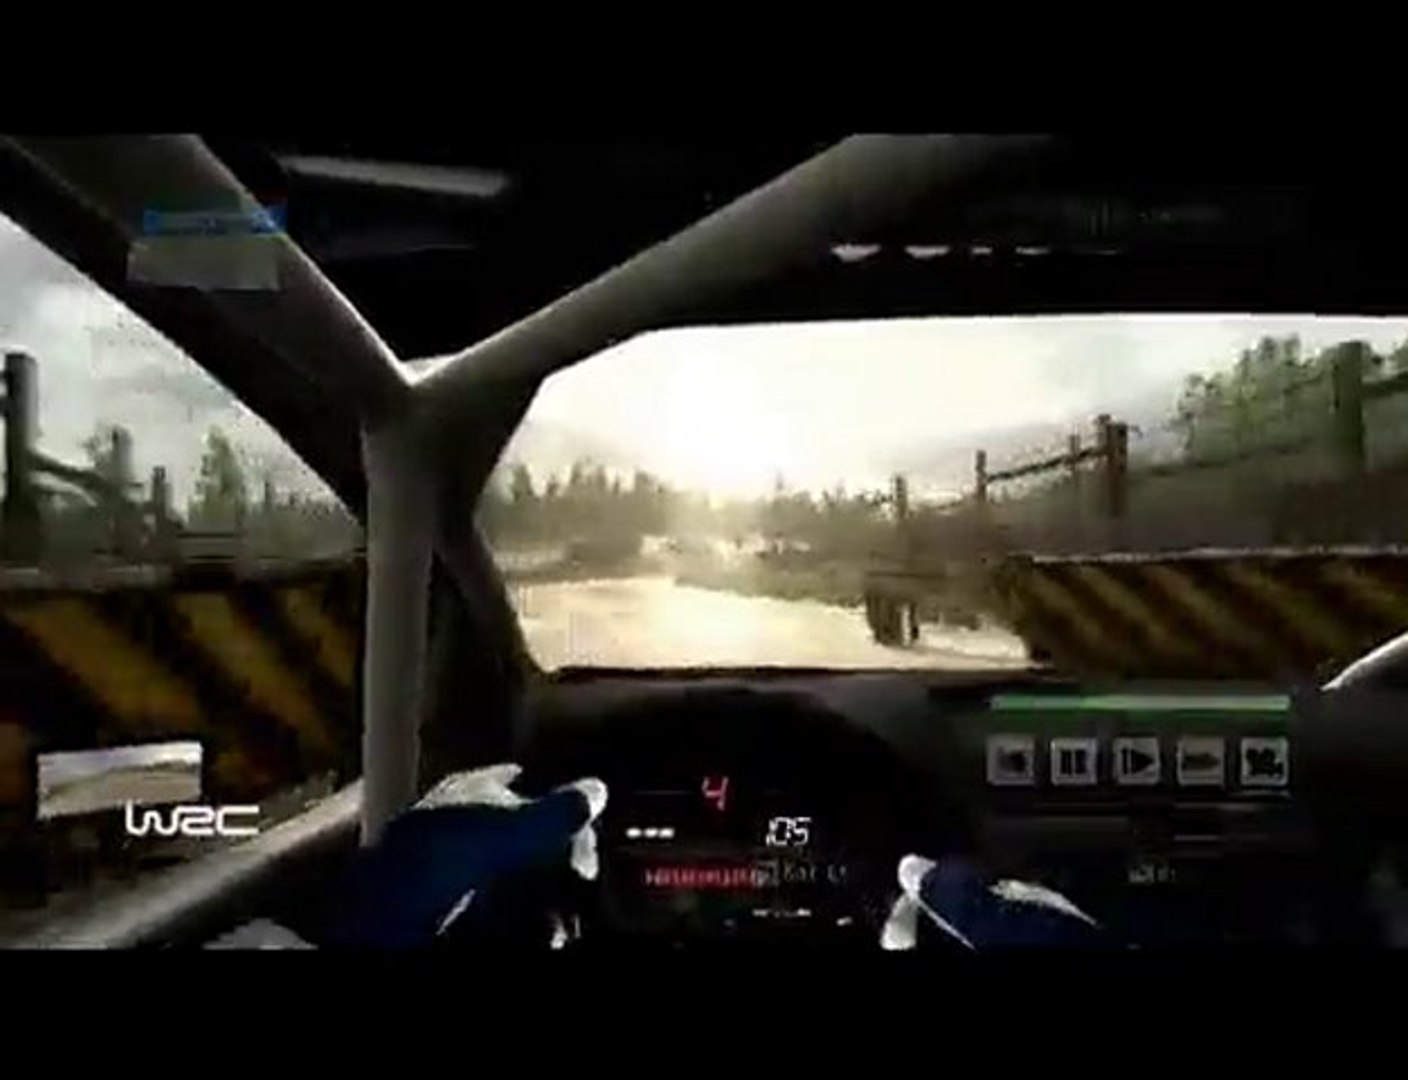 Fiesta S2000 - WRC